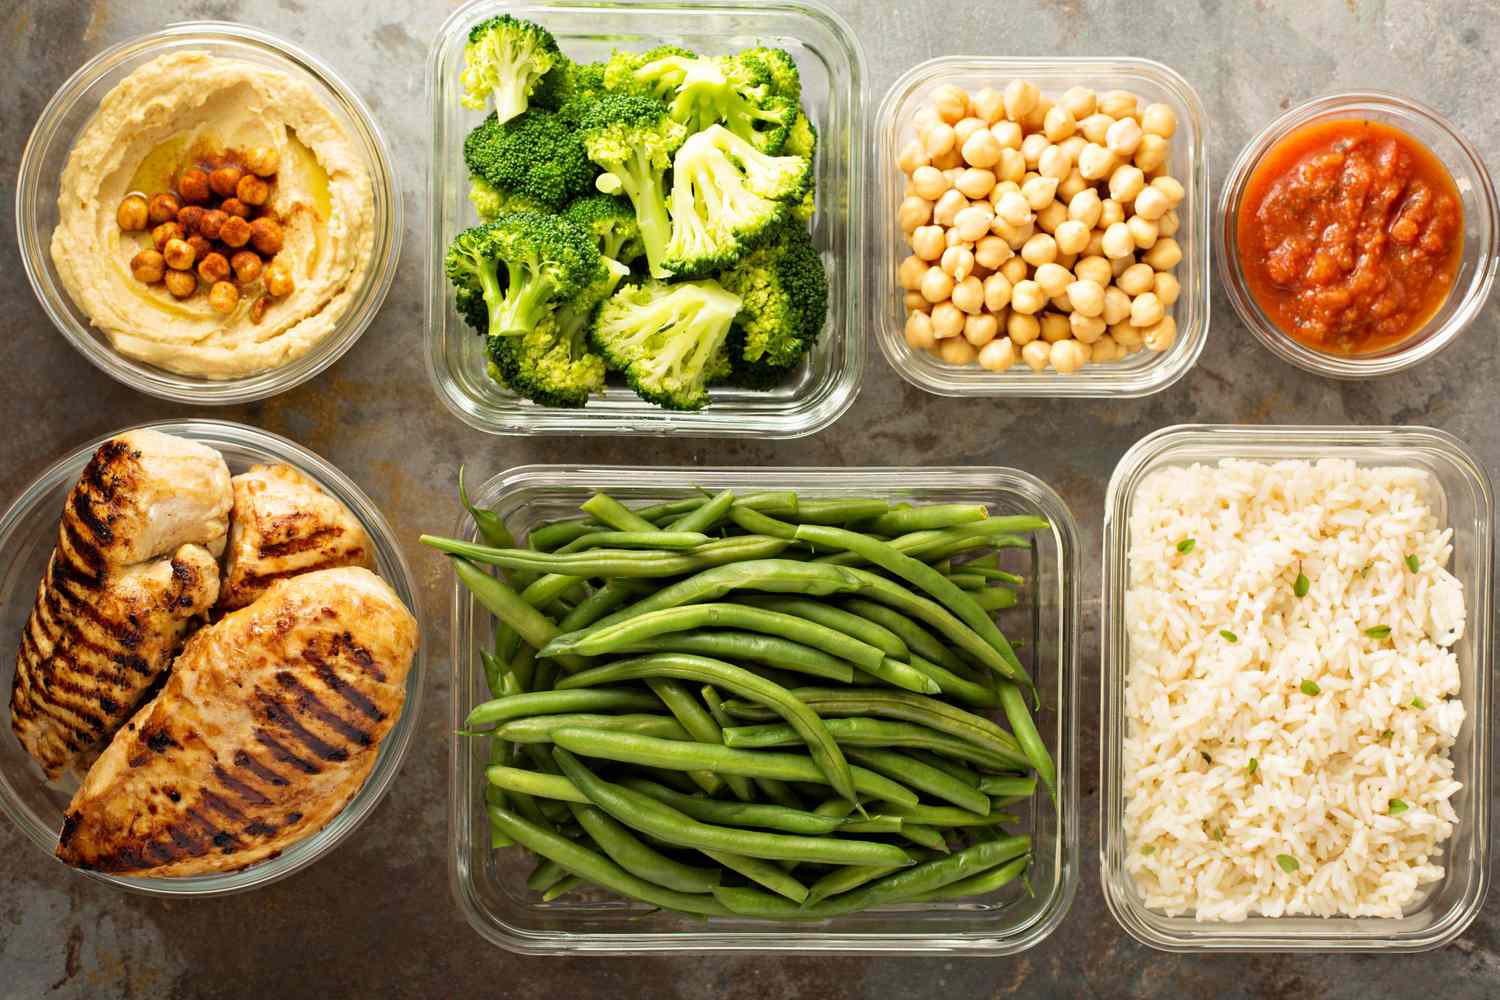 prepared diet food programs